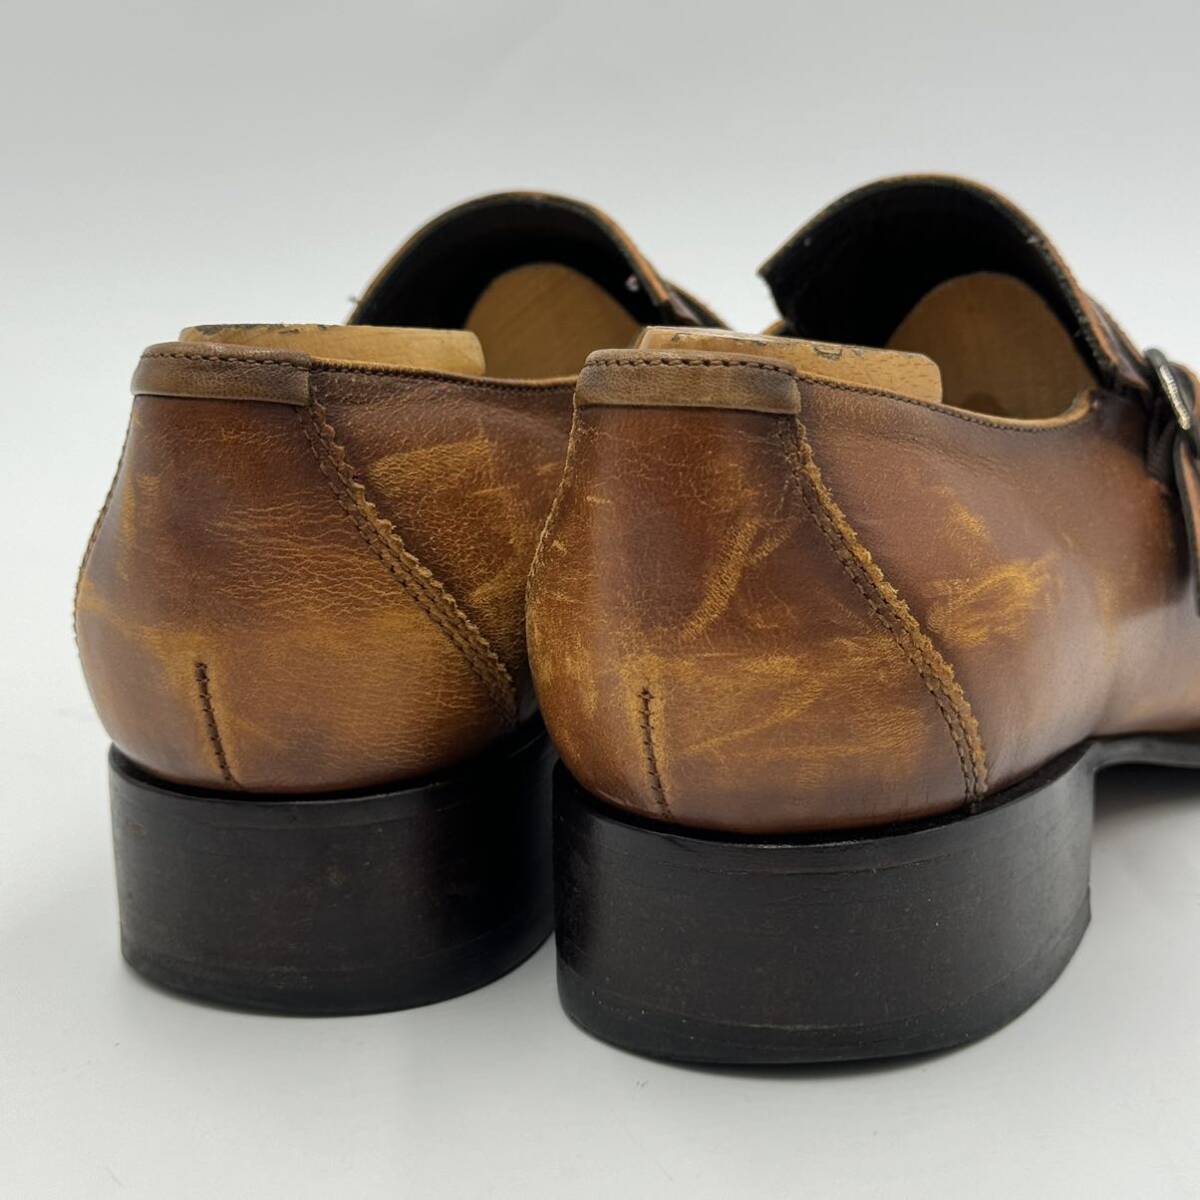 G☆ 人気モデル!! '洗練されたデザイン' KATHARINE HAMNETT LONDON キャサリンハムネット 本革 ベルトデザイン ビジネスシューズ 革靴 25cmの画像3